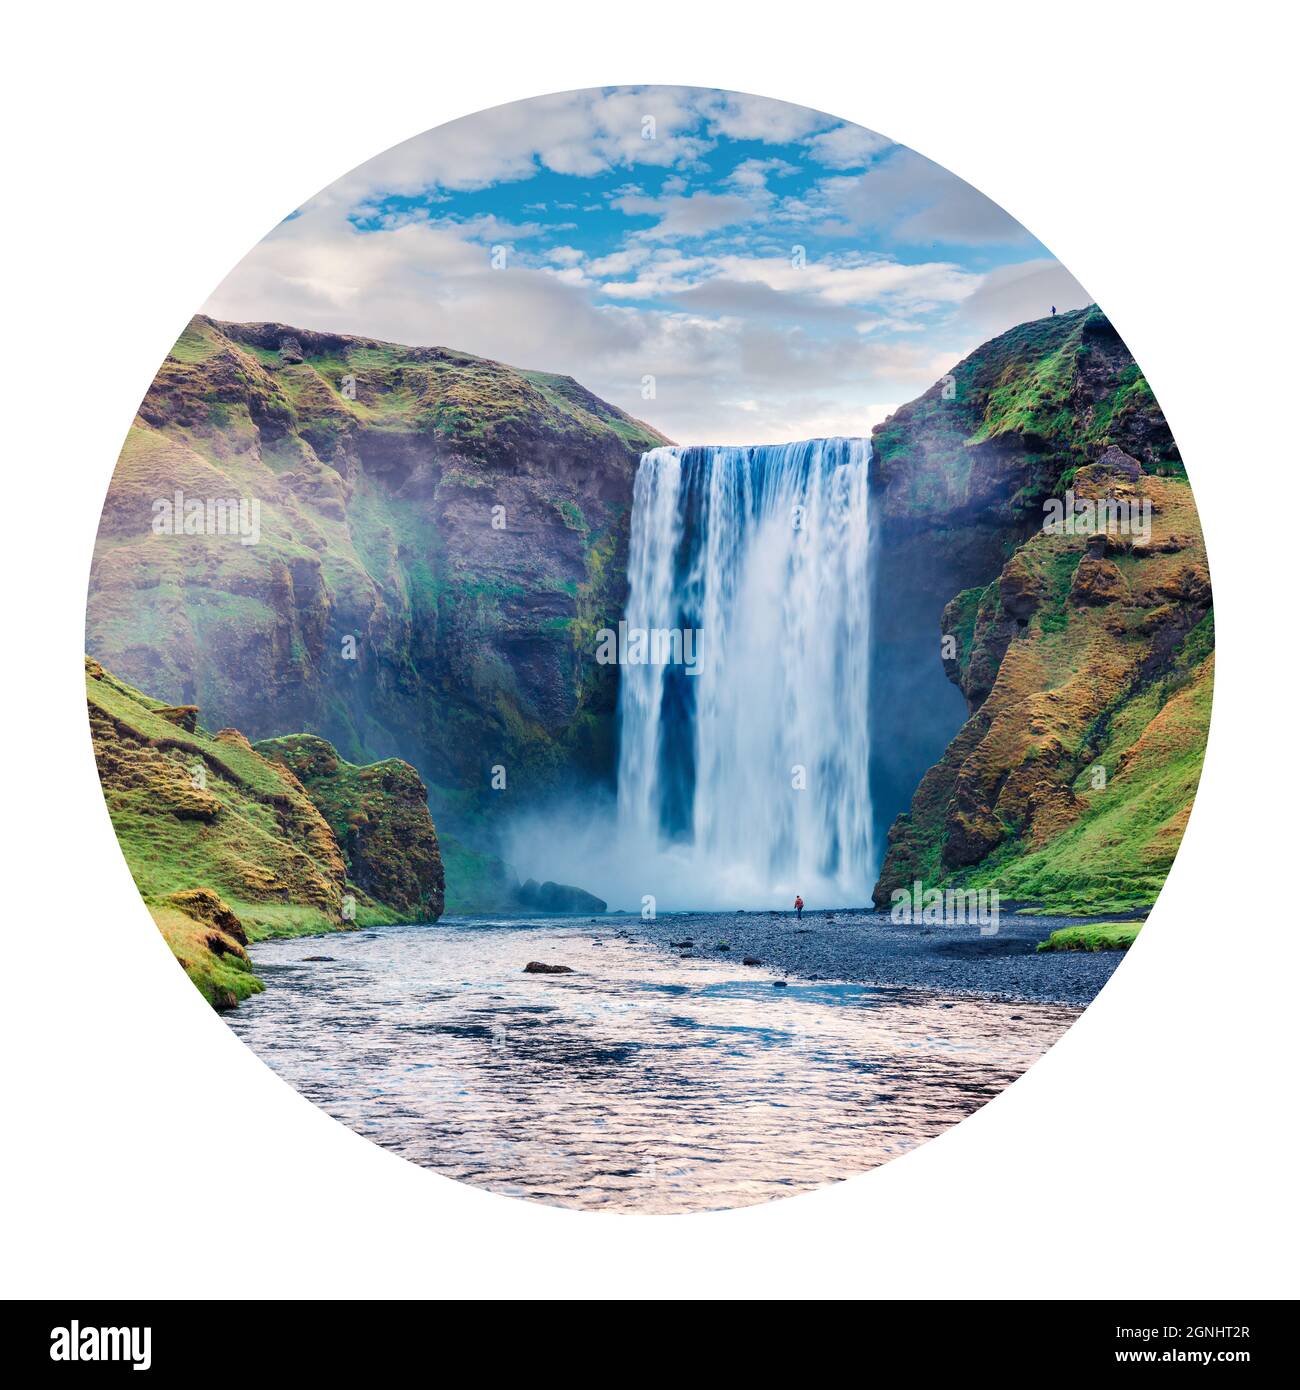 Icona rotonda della natura con paesaggio. Splendida vista estiva della cascata di Skogafoss sul fiume Skoga, Islanda, Europa. Fotografia in cerchio. Foto Stock